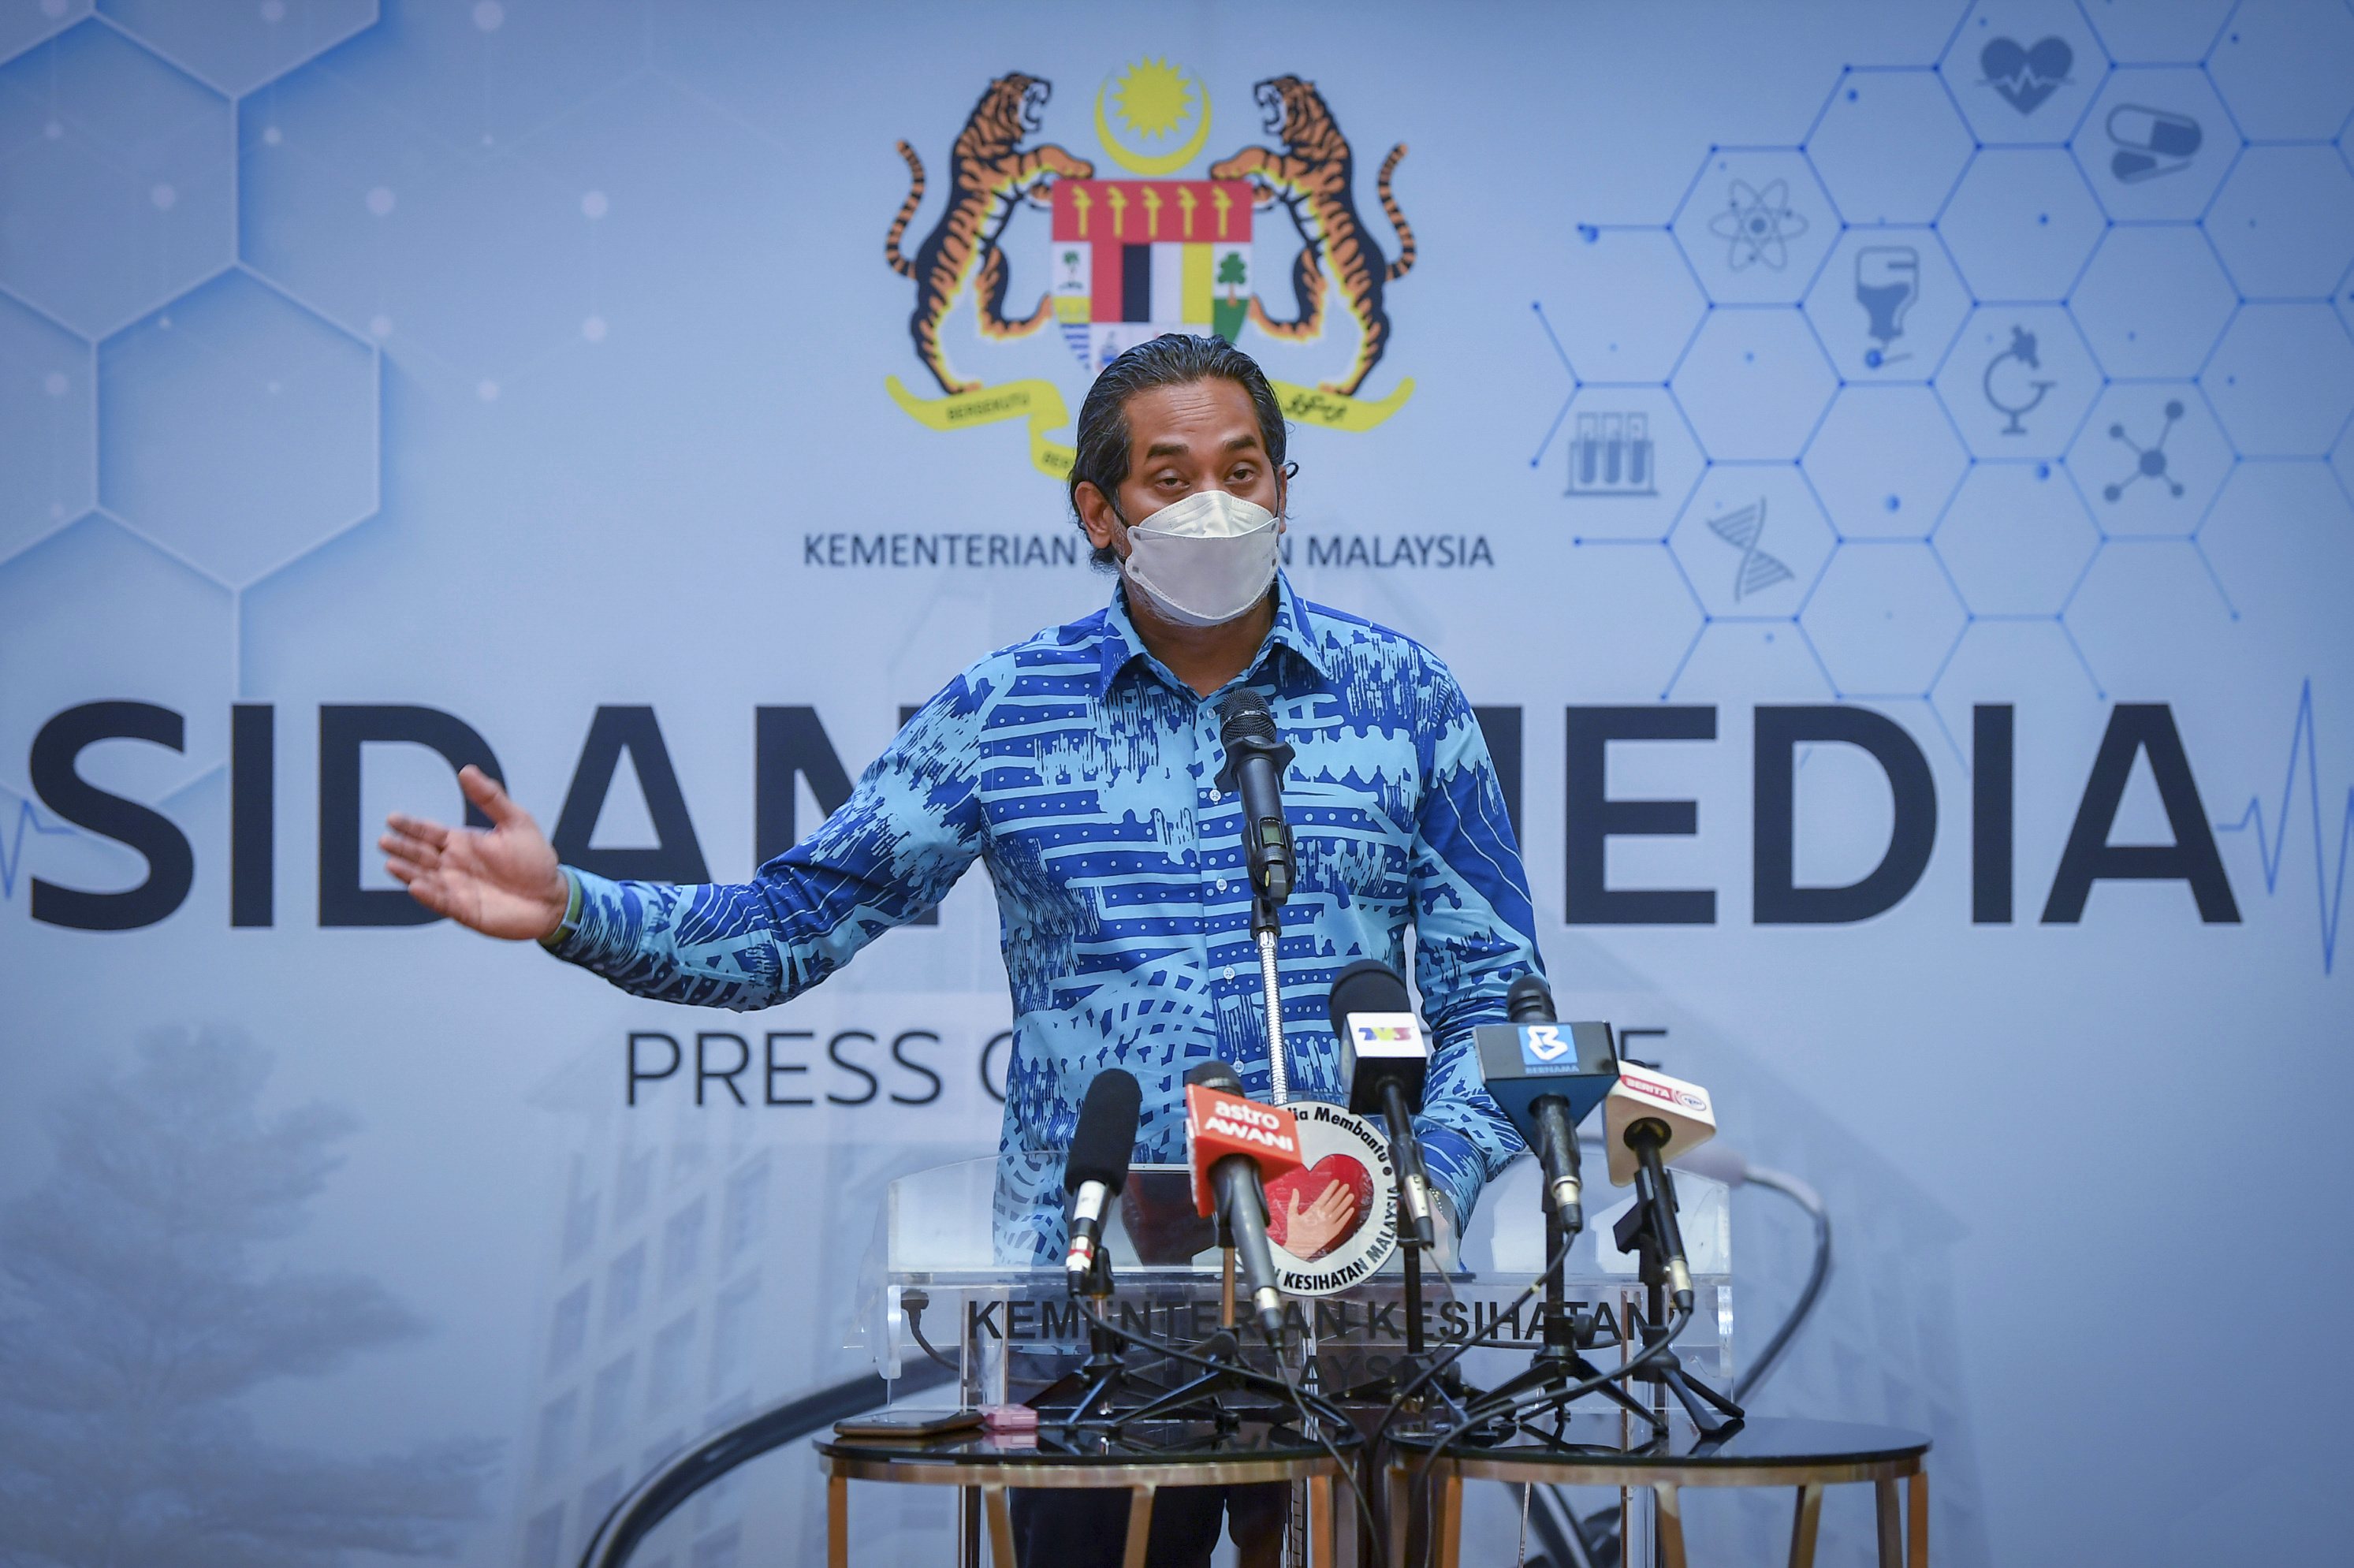  وزير الصحة الماليزي خيري جمال الدين يتحدث خلال مؤتمر صحفي، أكد فيه أول حالة من نوع فيروس أوميكرون التاجي في البلاد(د ب أ)